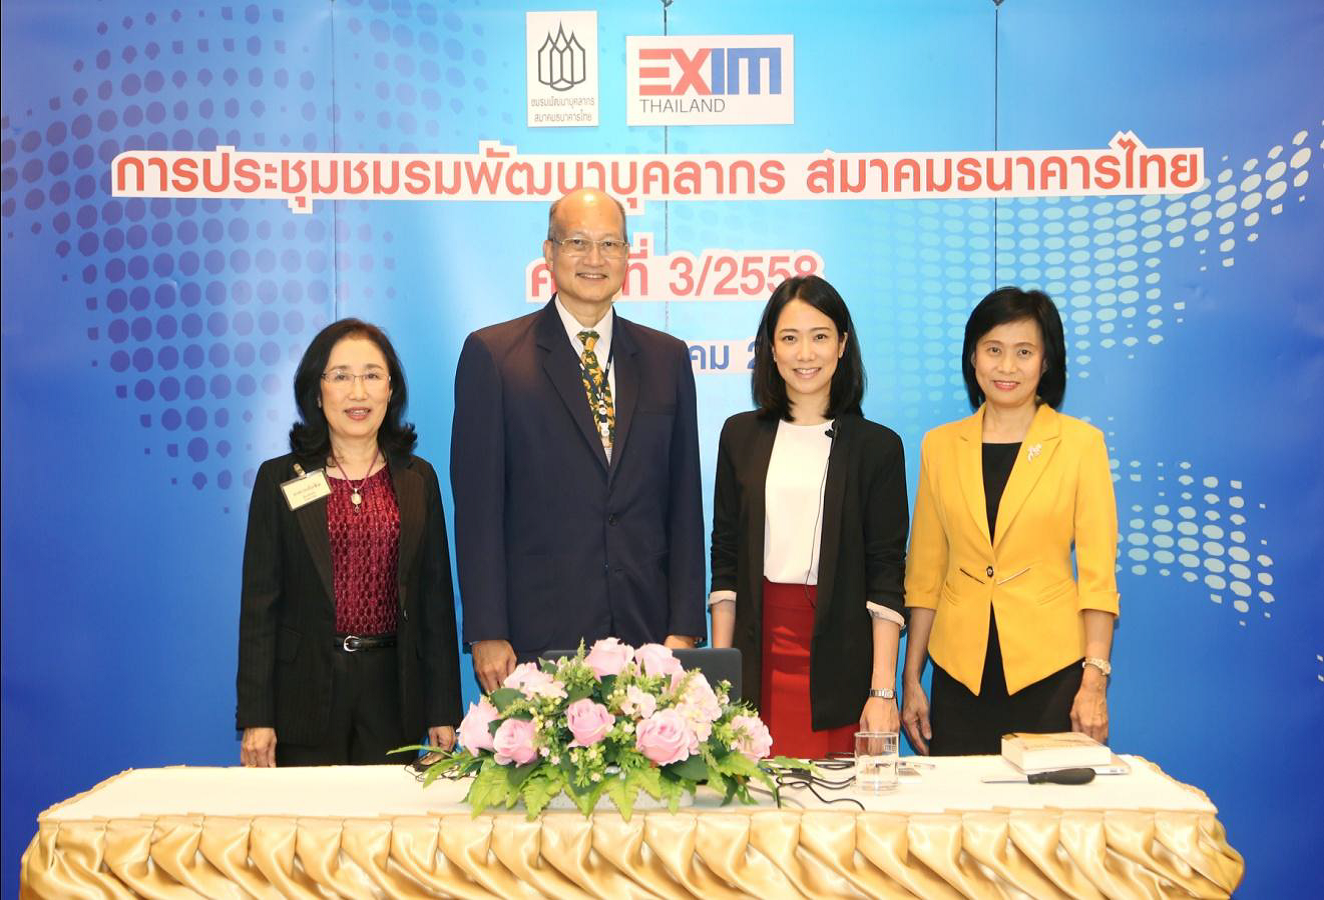 EXIM BANK เป็นเจ้าภาพจัดประชุมชมรมพัฒนาบุคลากร สมาคมธนาคารไทย